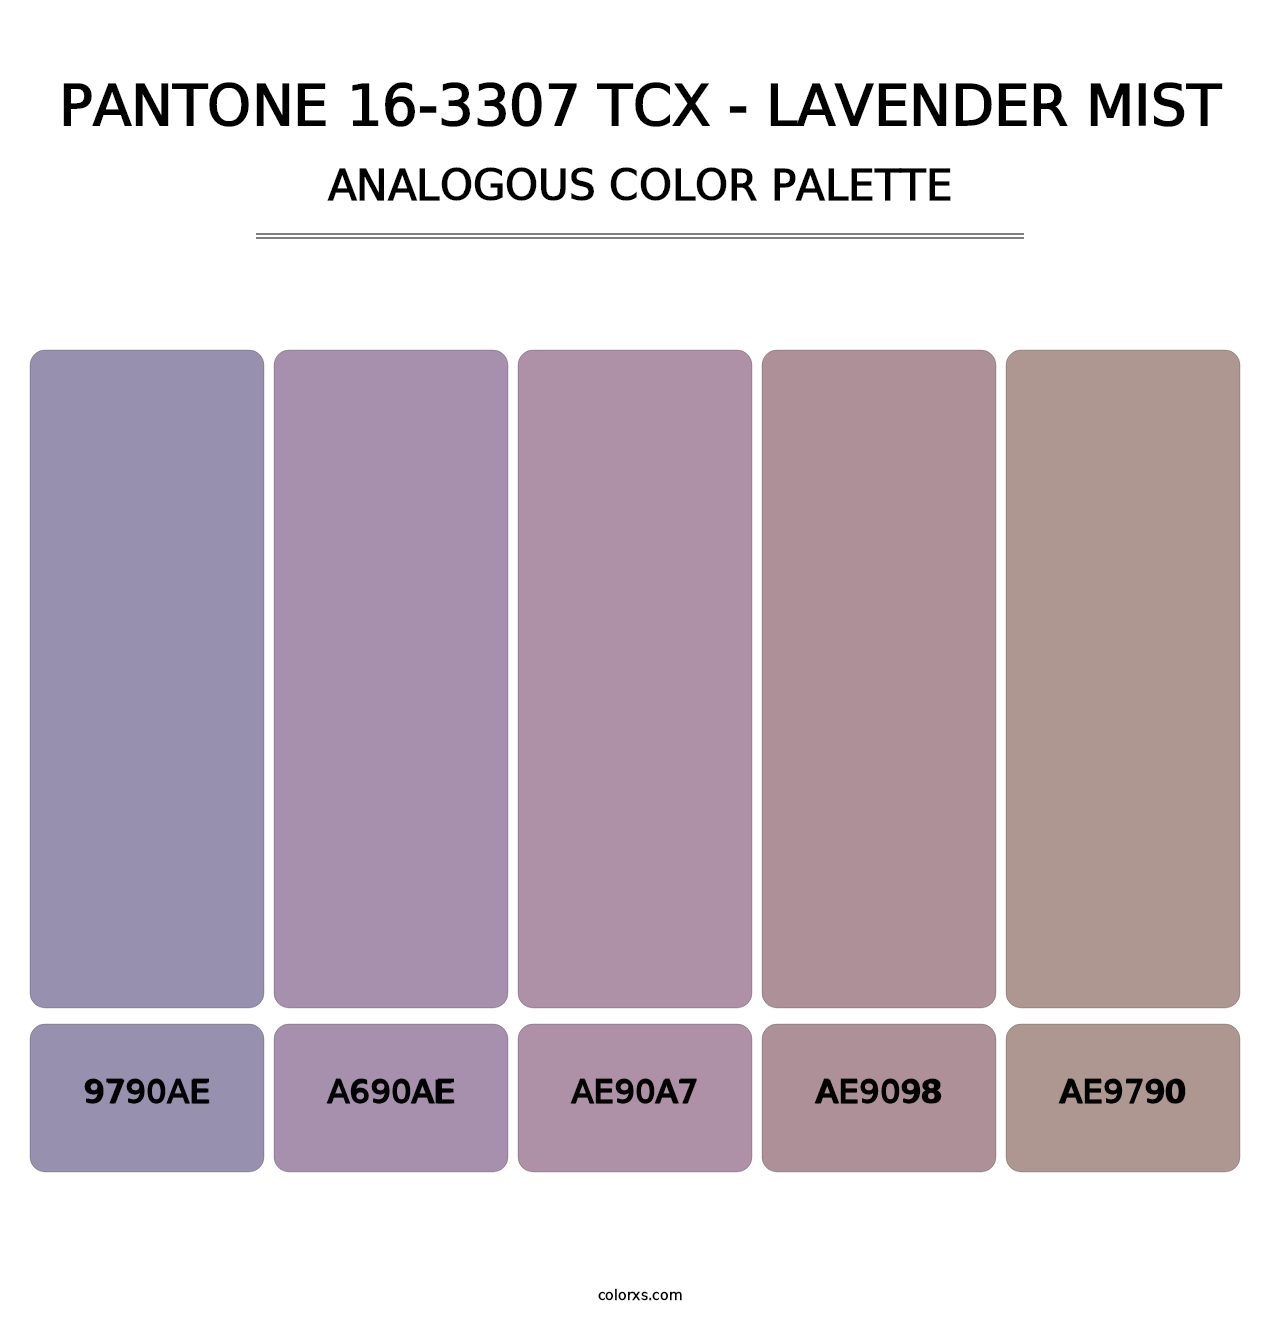 PANTONE 16-3307 TCX - Lavender Mist - Analogous Color Palette